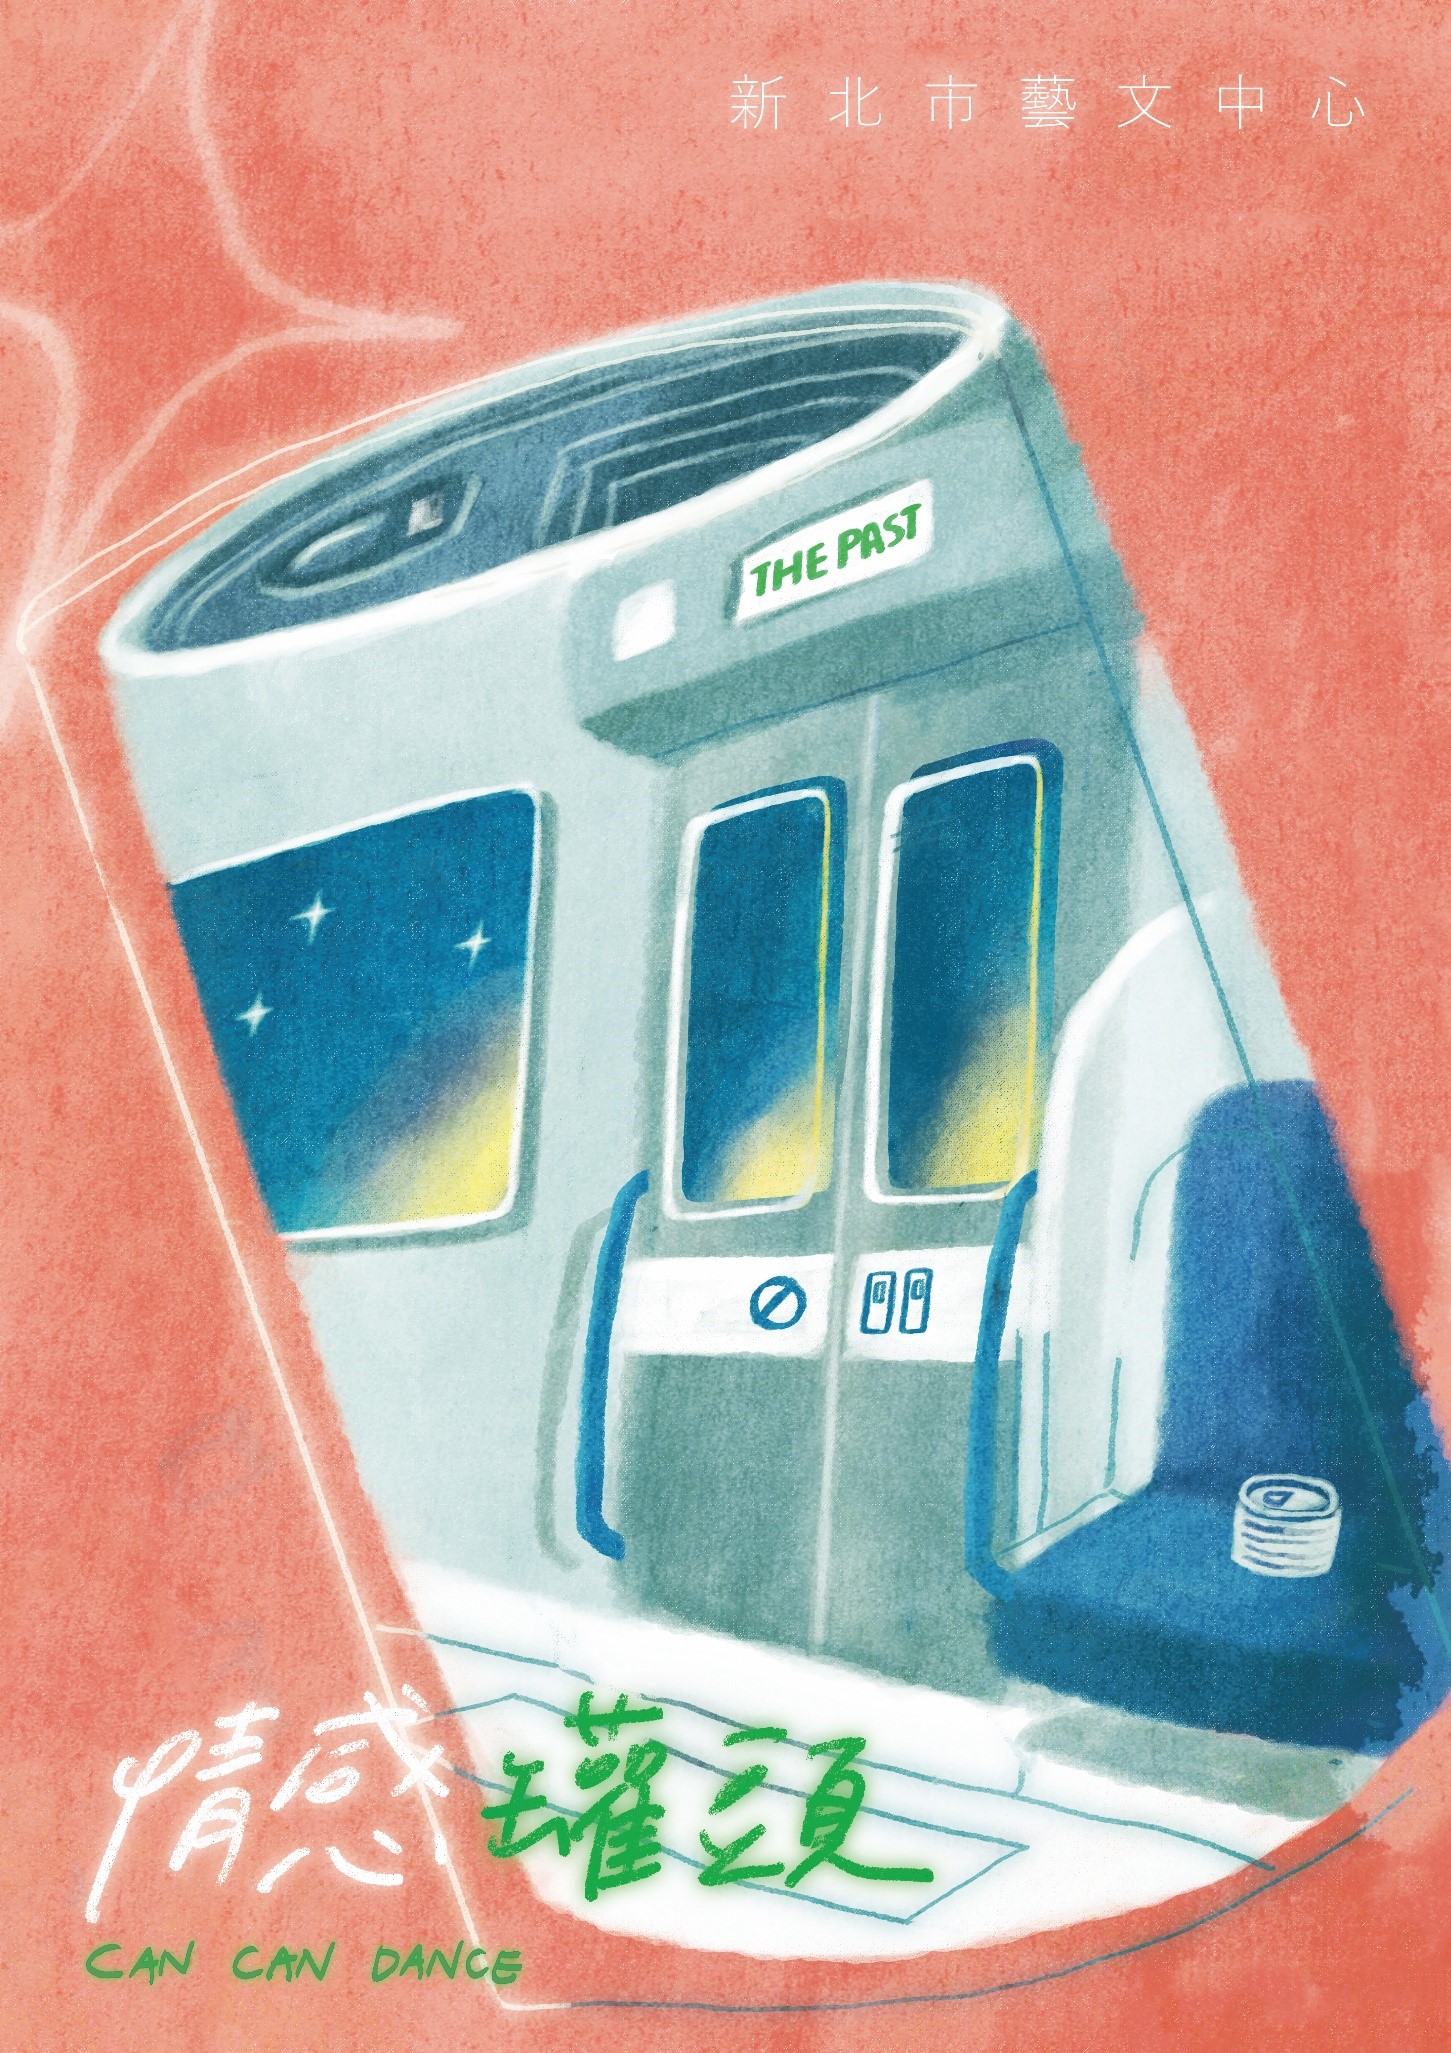 情感罐頭:一個罐頭中畫上捷運車廂的圖